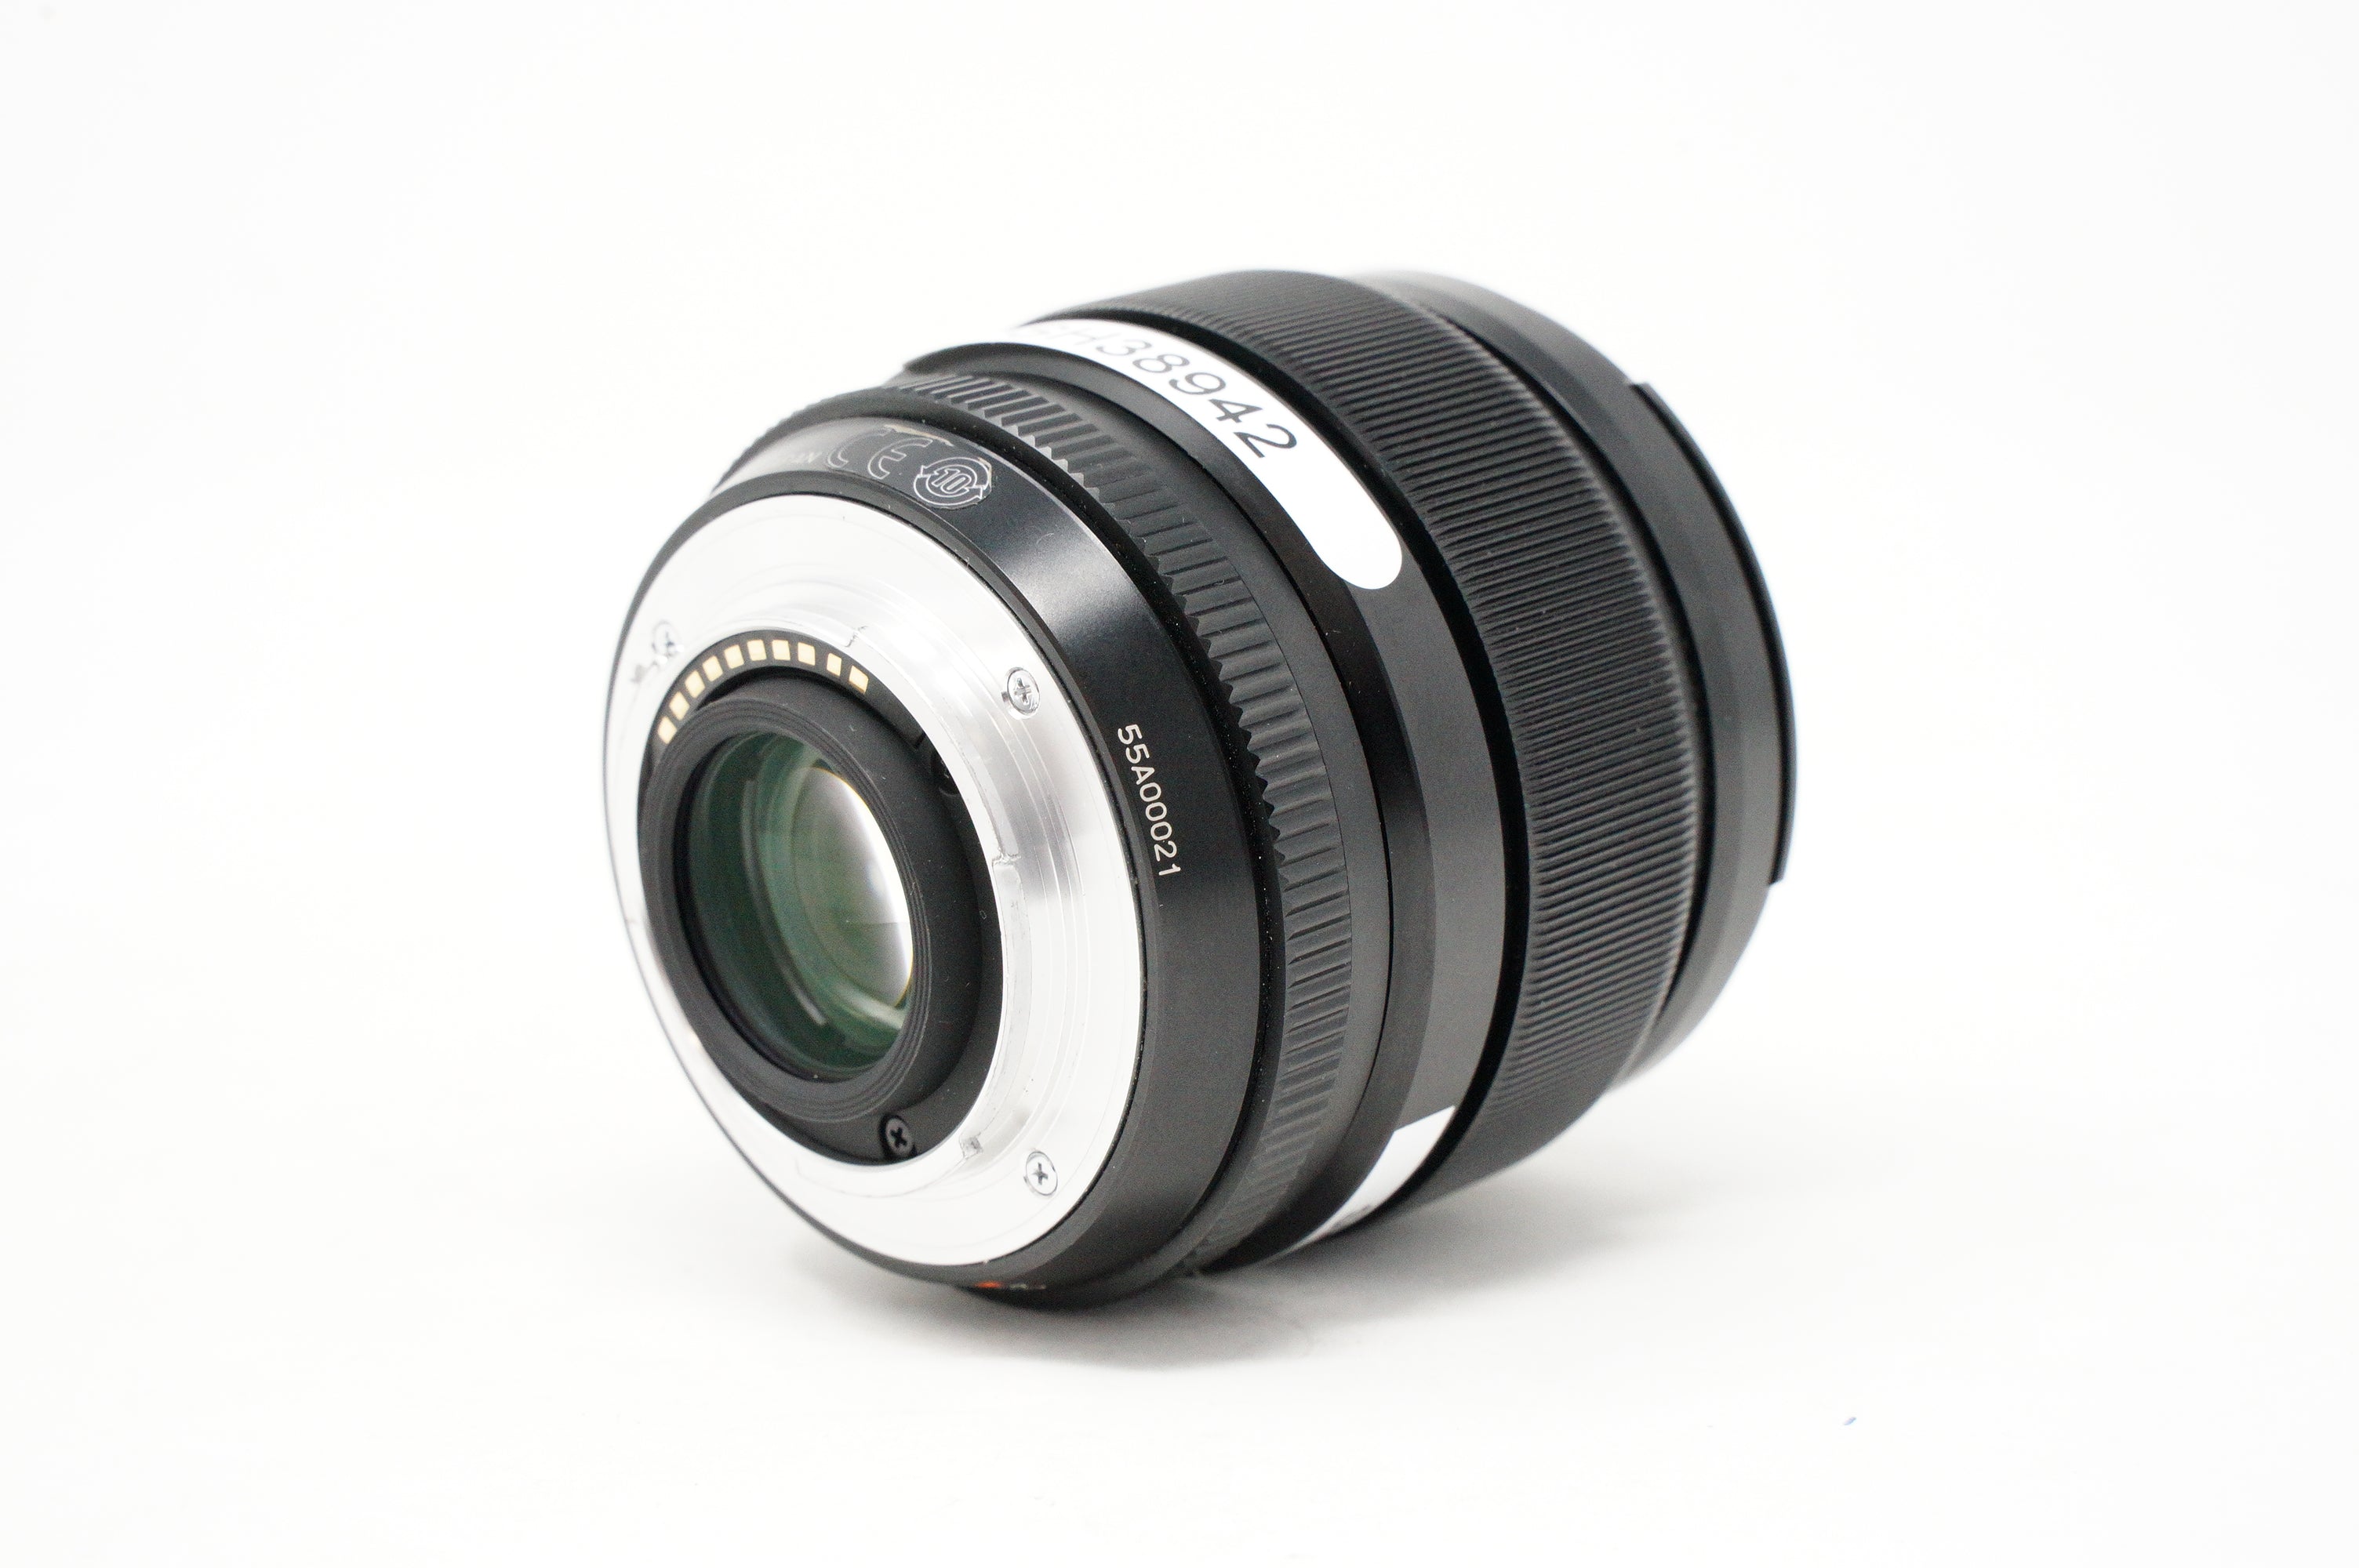 Used Fujifilm XF 23mm F1.4 R Super EBC Prime lens (Boxed SH38942)